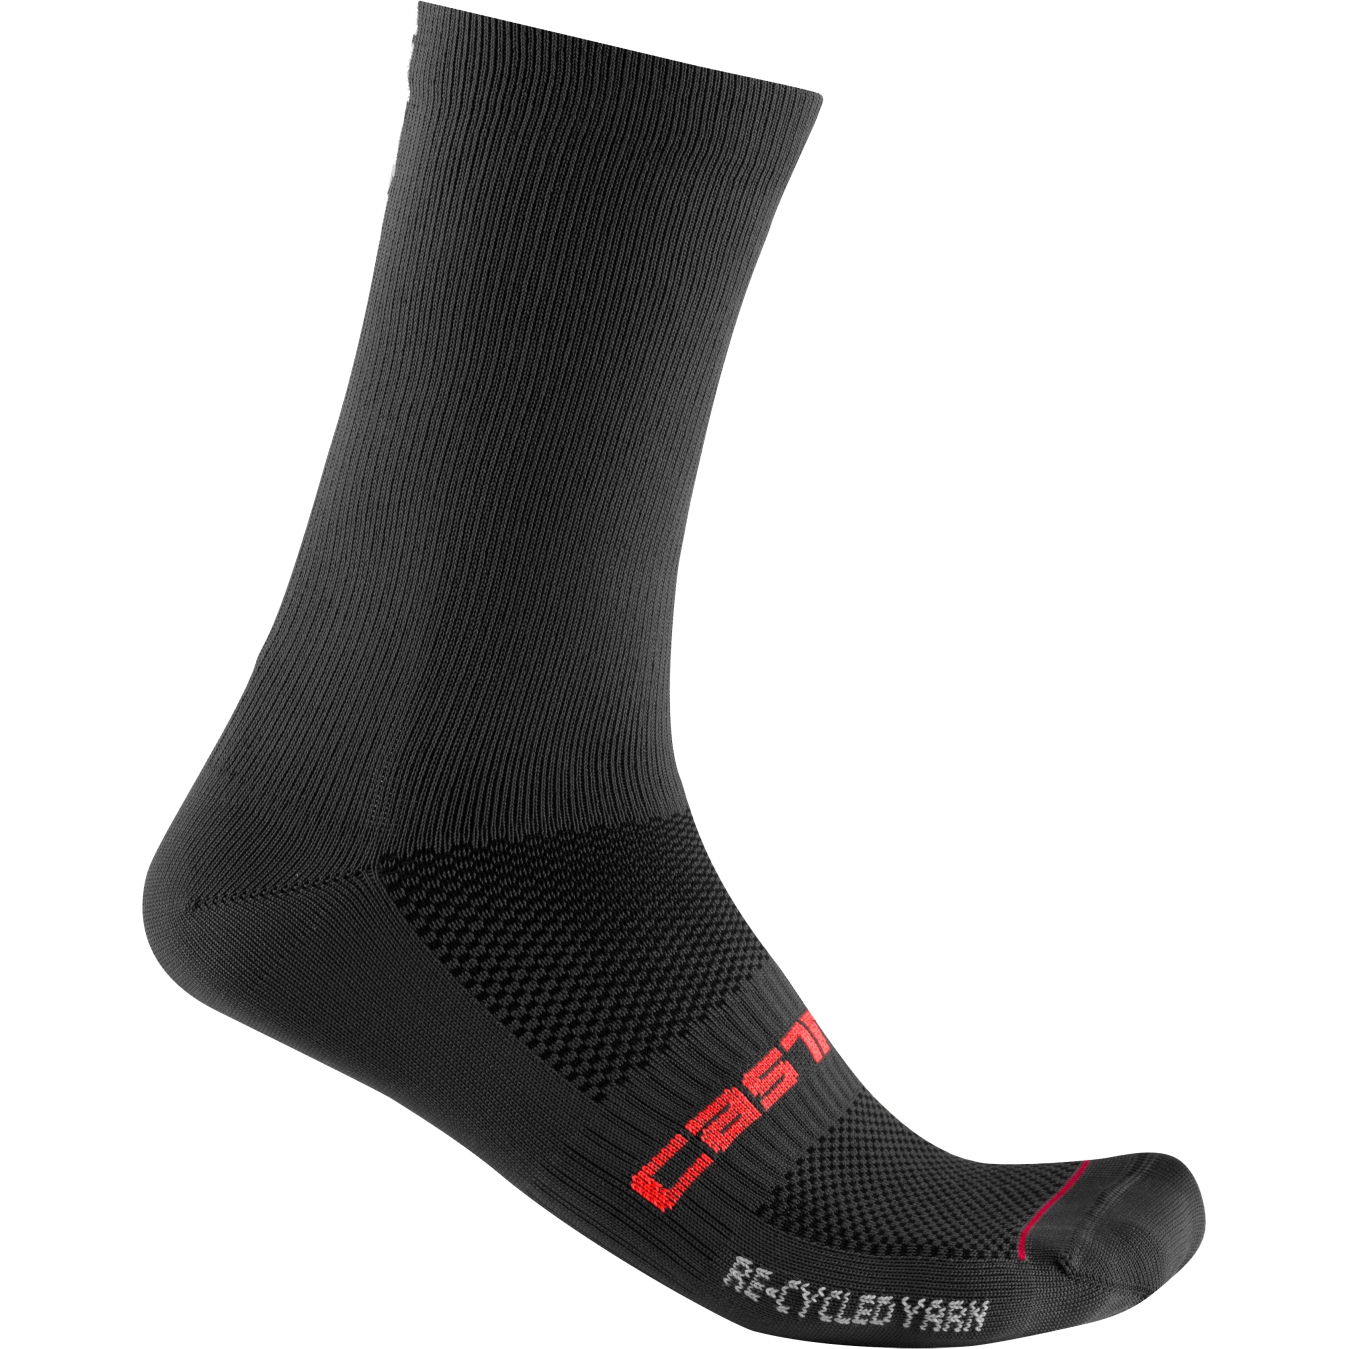 Produktbild von Castelli Re-Cycle Thermal 18 Socken - schwarz 010